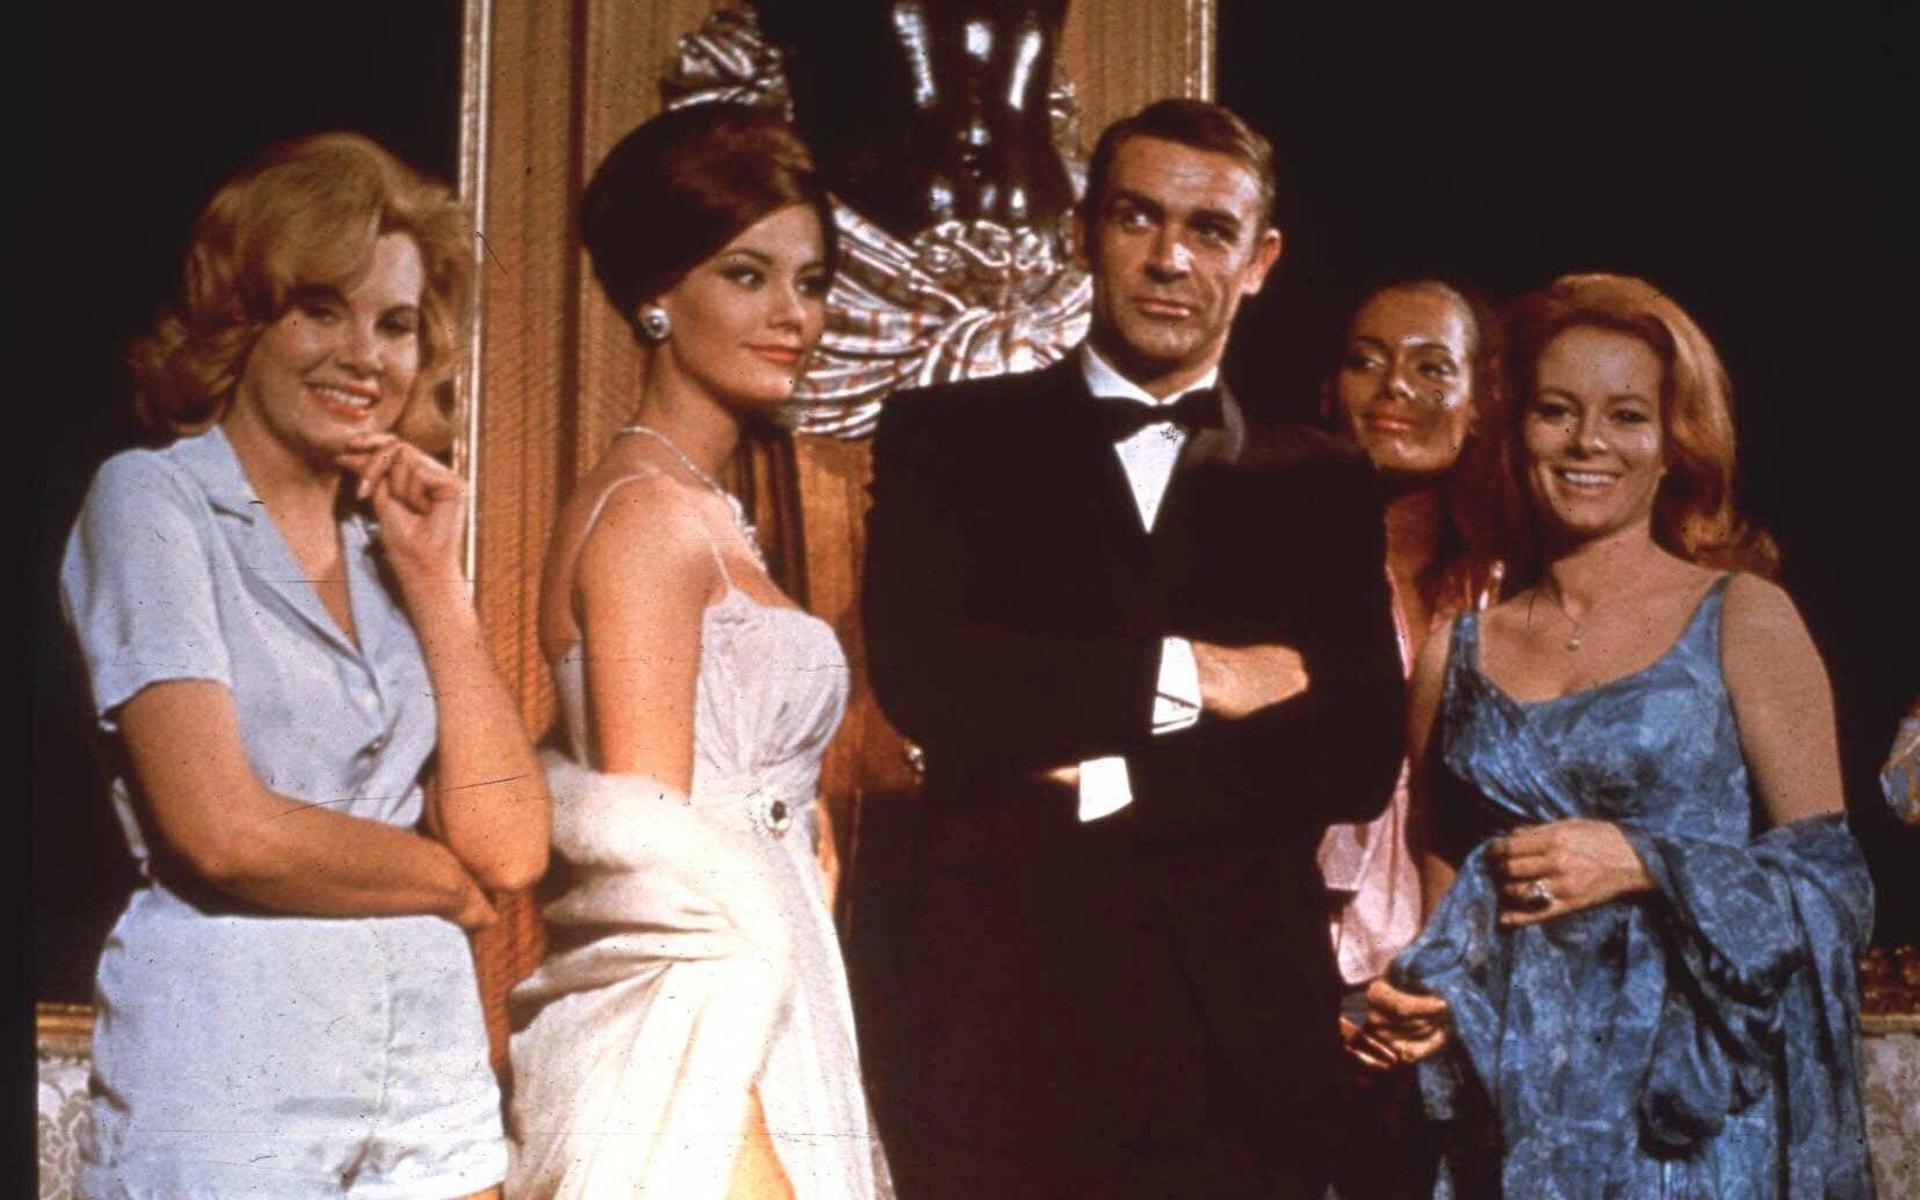 Karaktären James Bond har en rik historia. Både i böcker och i film- Här ser vi Sean Connery, som Agent 007, posera inför en filmvisning av ”Åskbollen” från 1965.